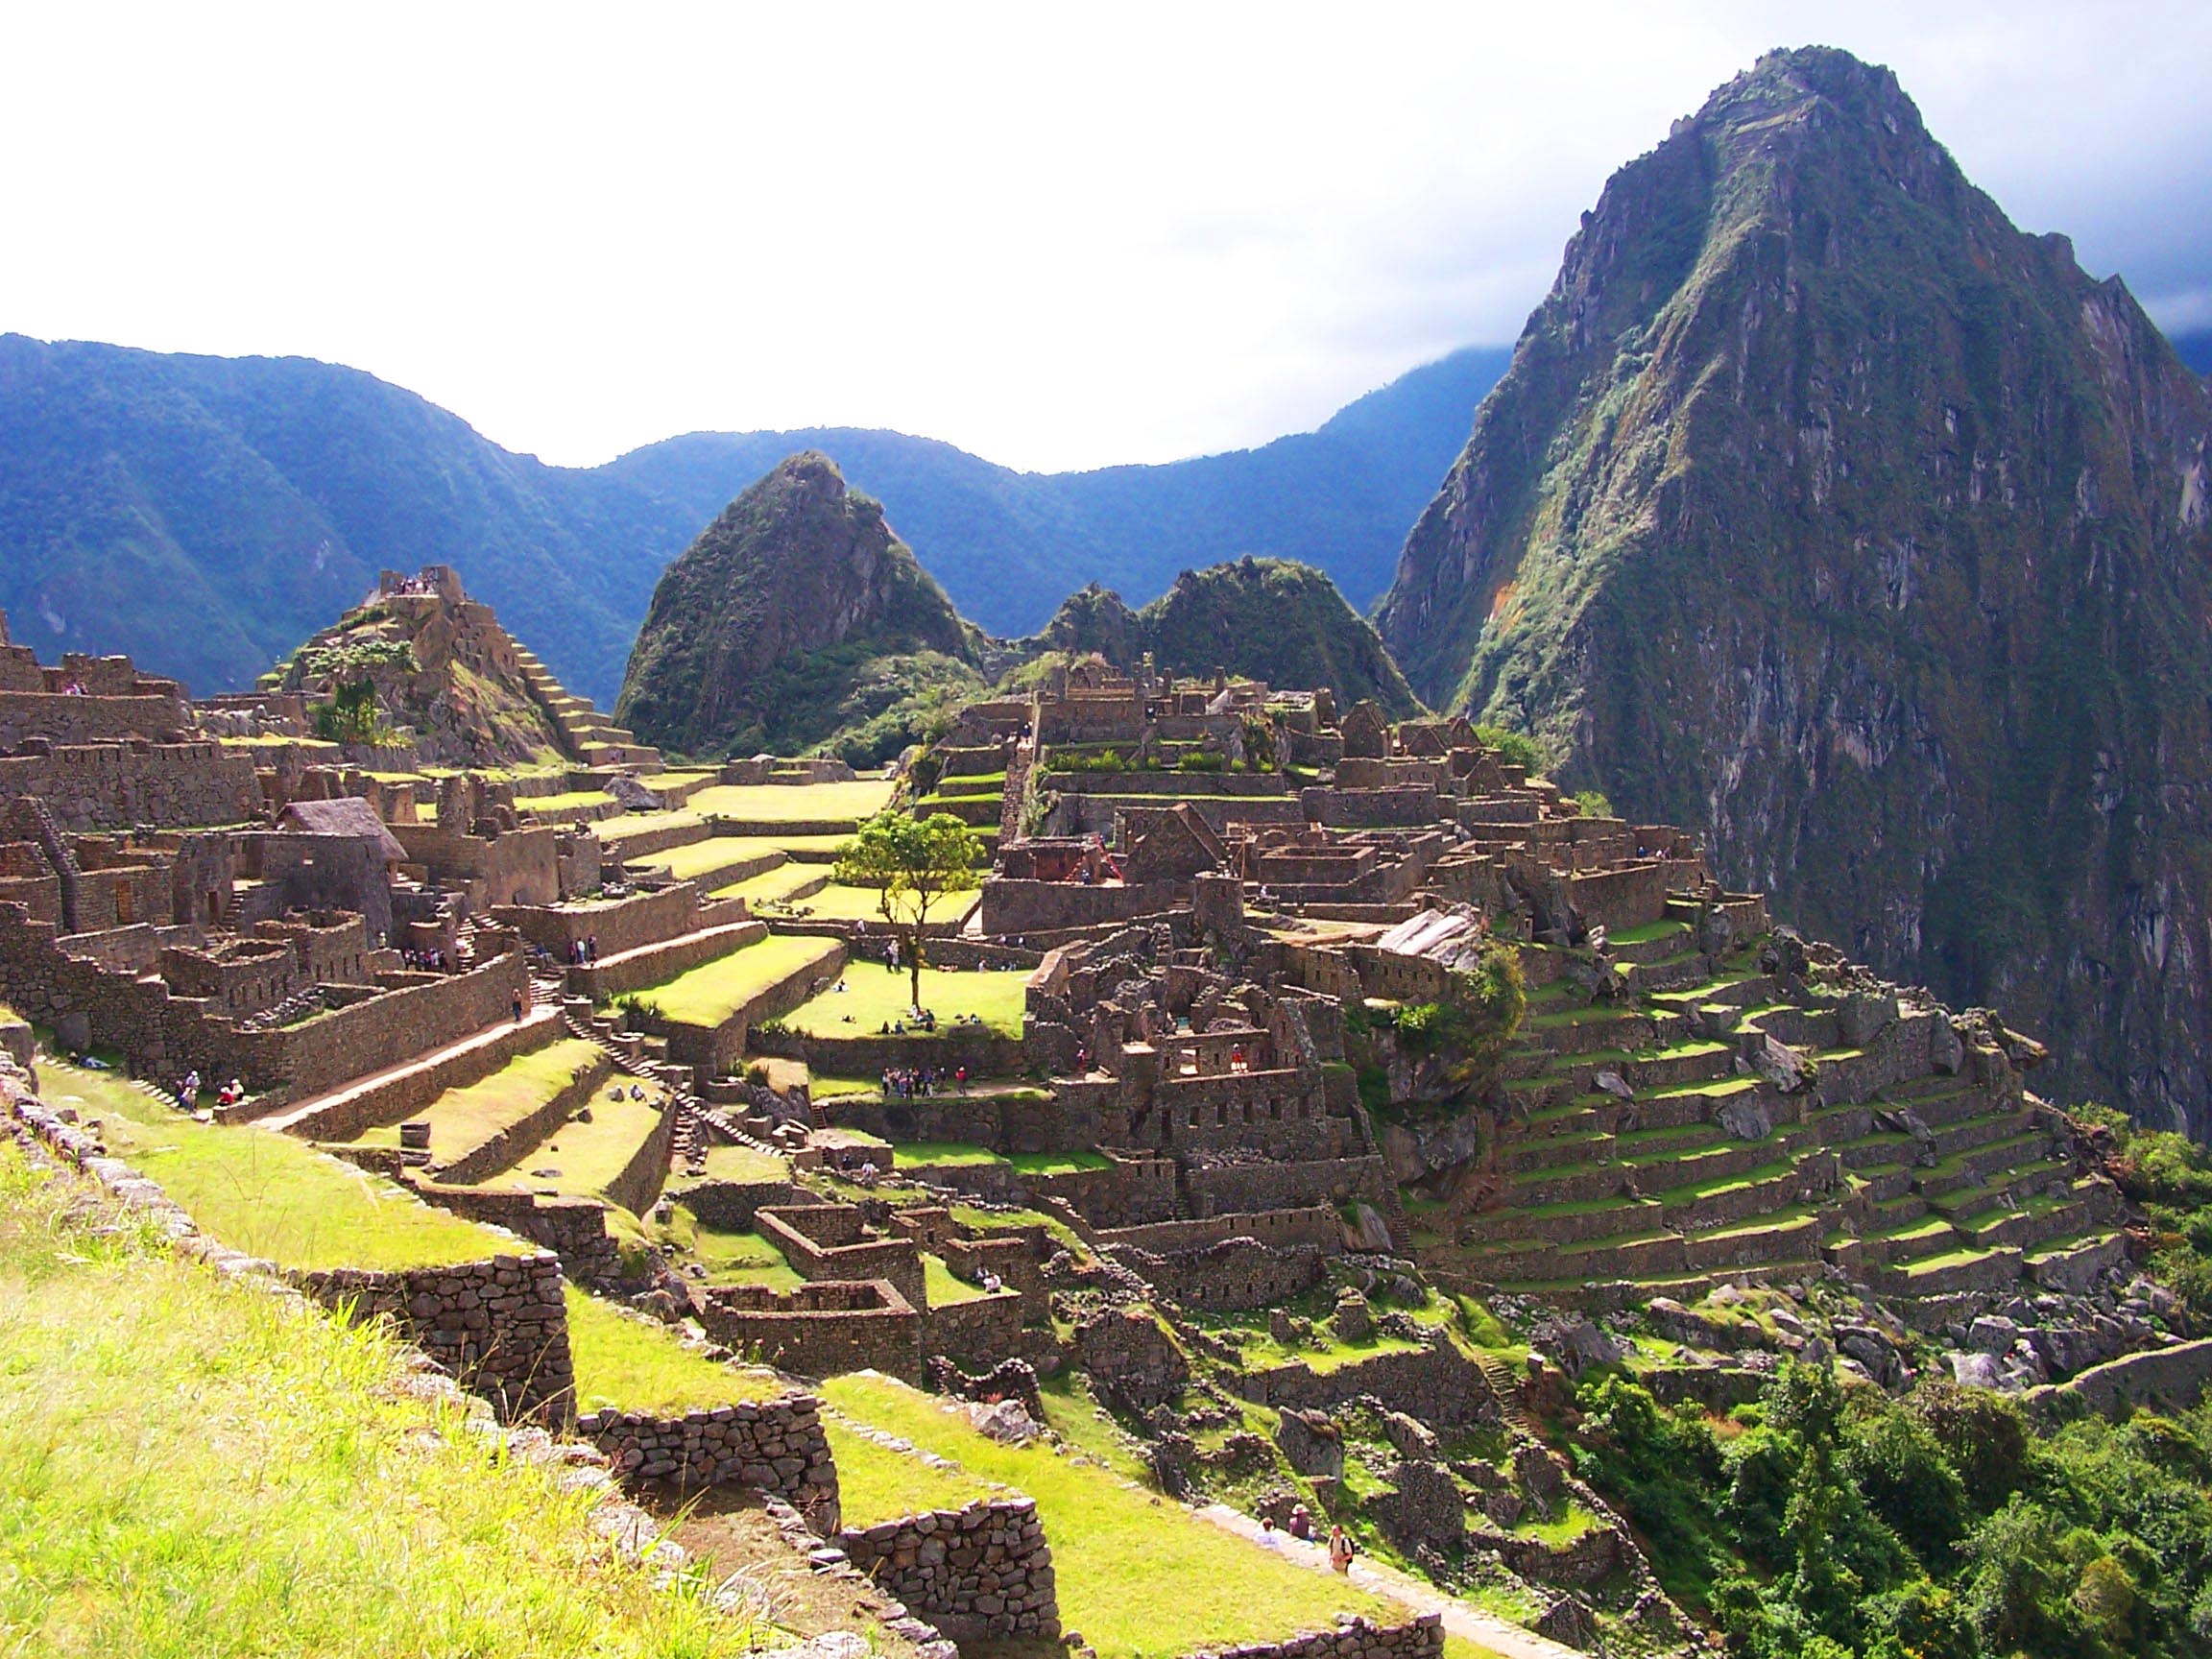 Machu Picchu Experience (Hiram Bingham train) - Independent 4